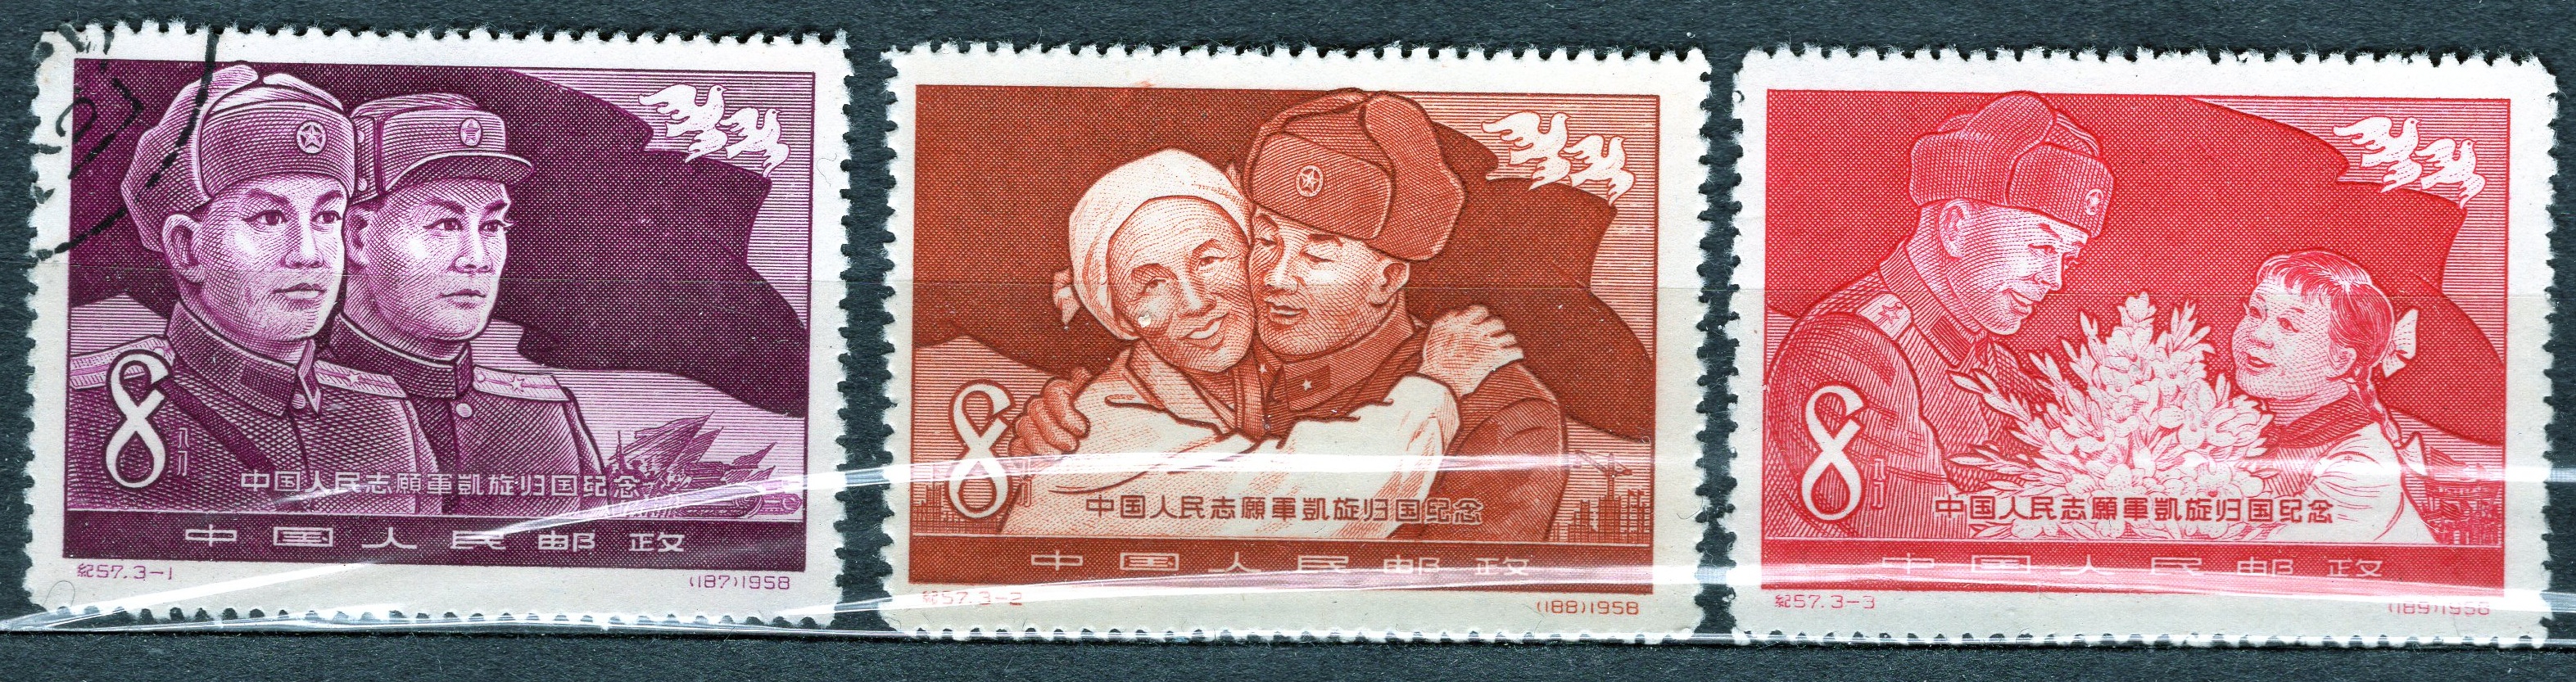 22 81 21. Марки Китая. Марки Китай 1958 год. Китайские марки Филателия Ленин. Почтовые марки китайской народной Республики 1959.